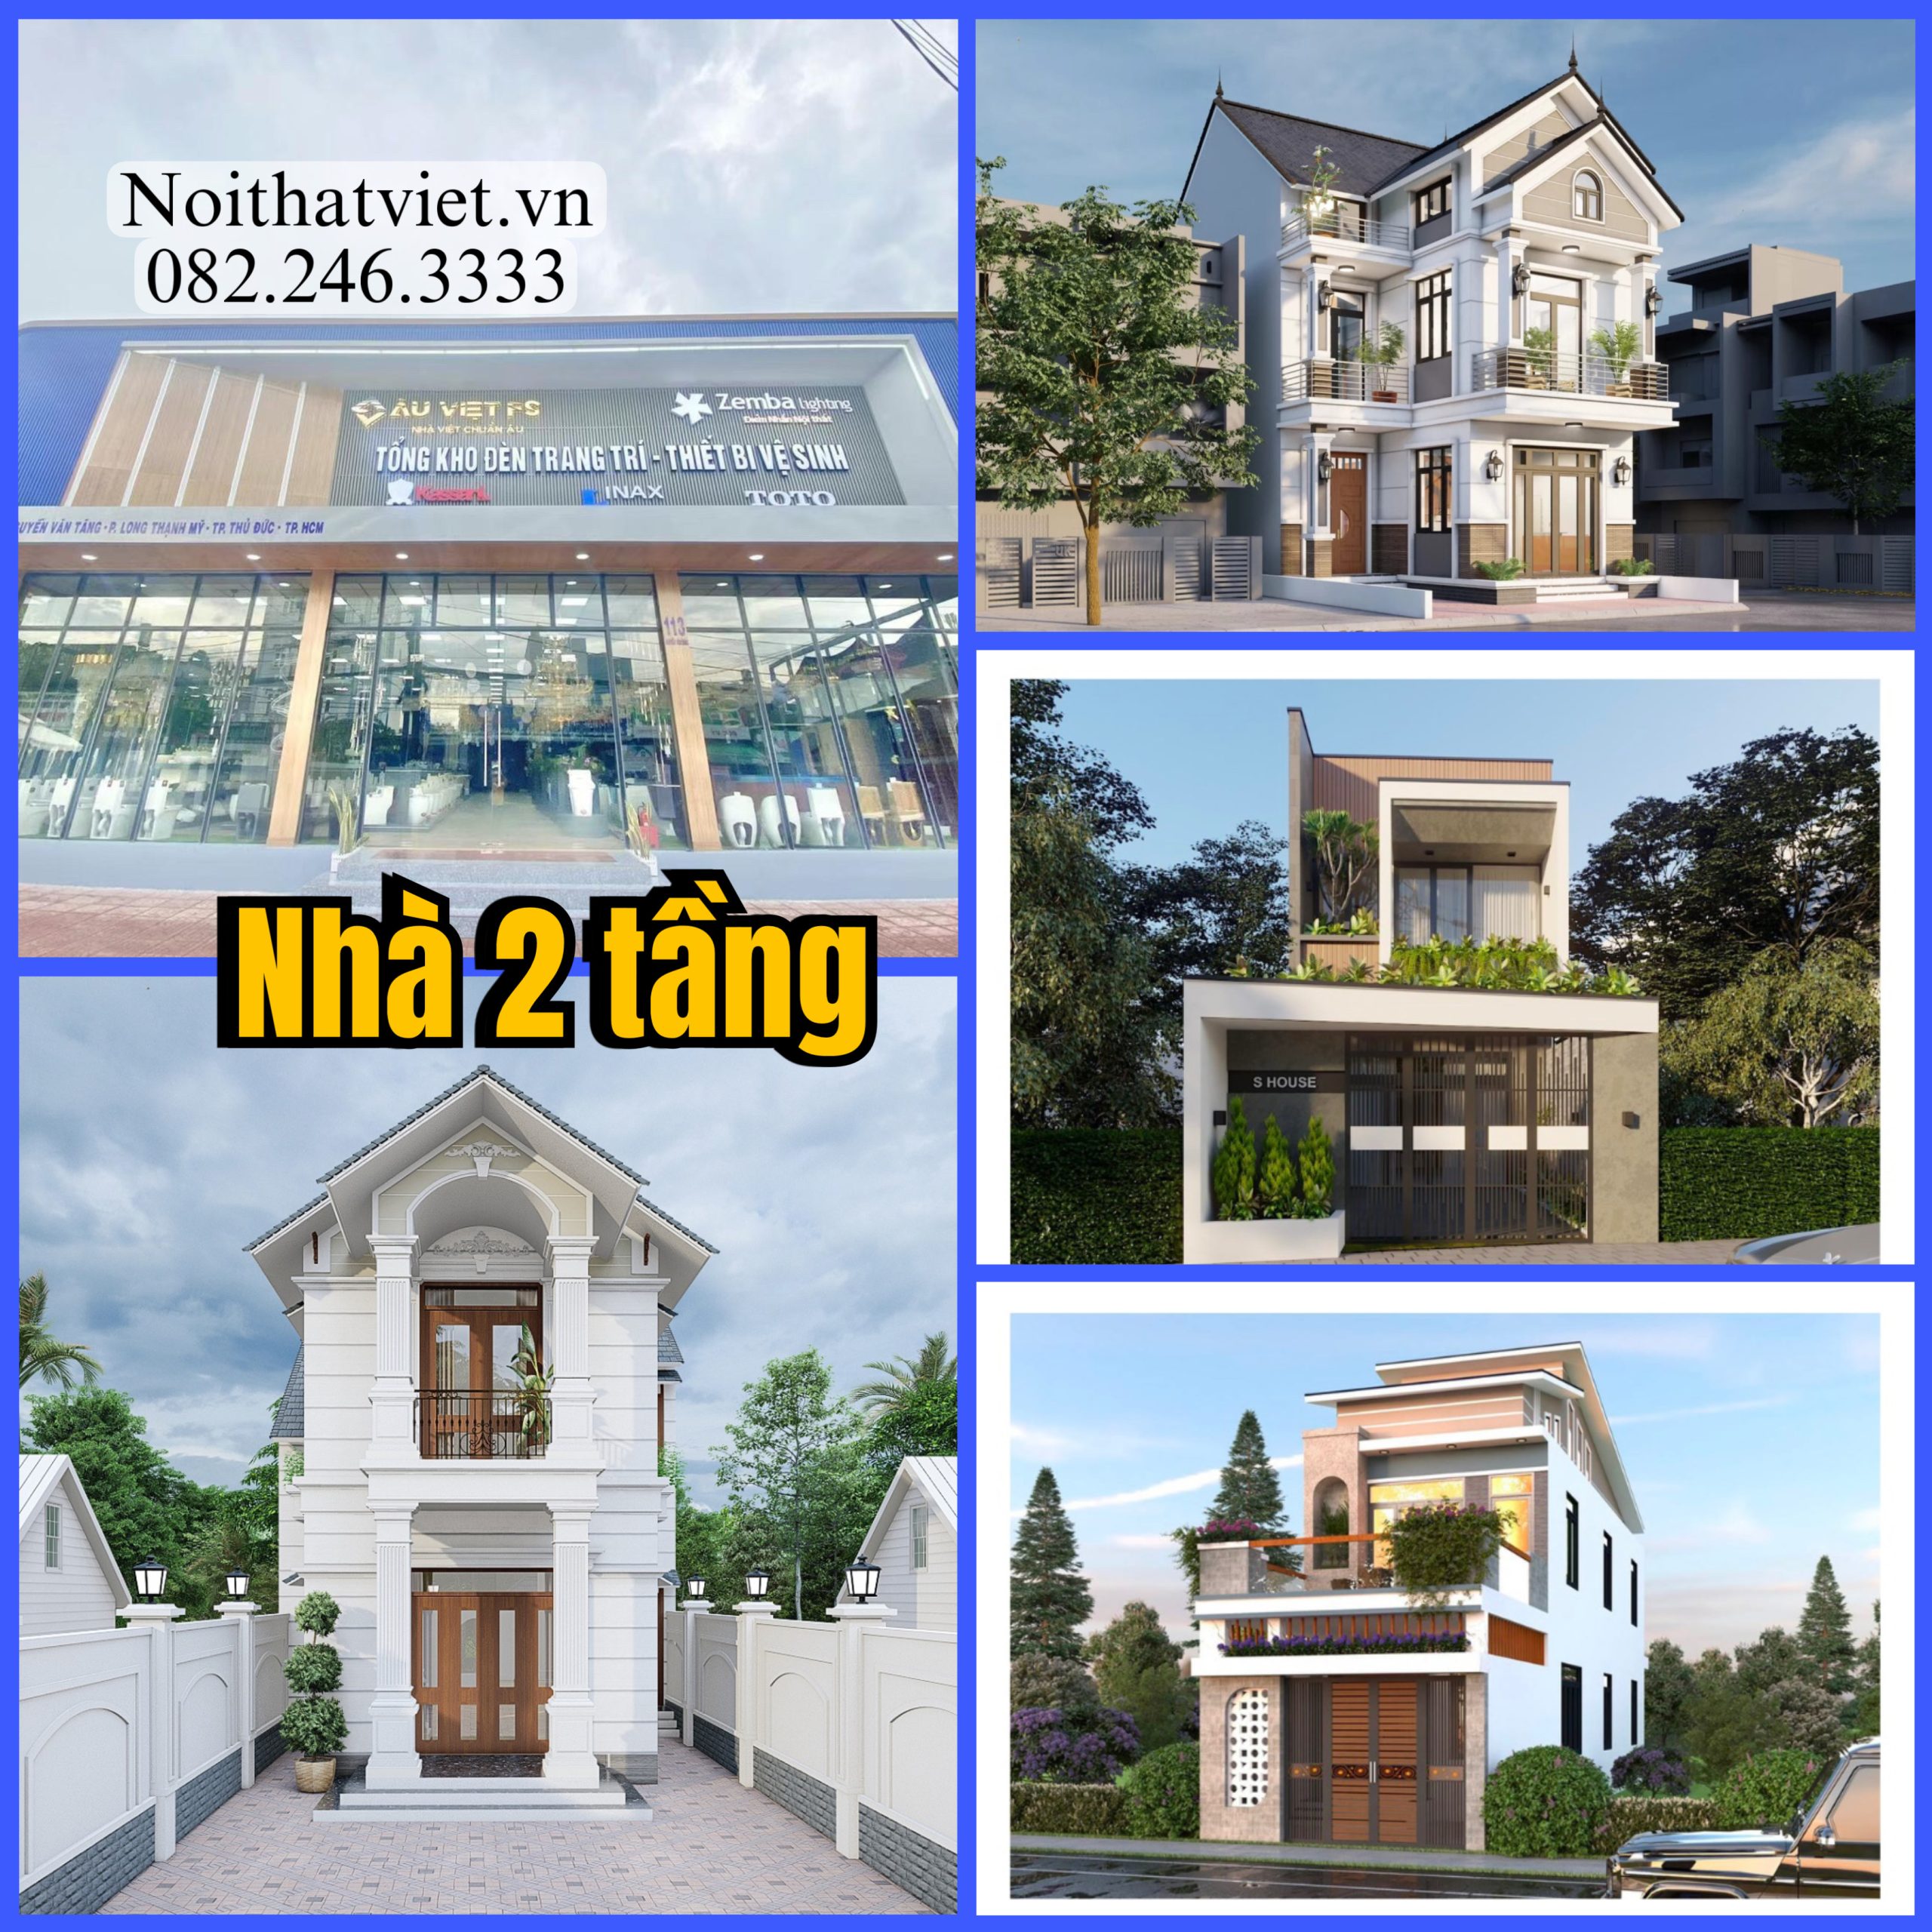 Mẫu thiết kế biệt thự đẹp nhất Việt Nam năm 2024, Nhà 2 tầng đẹp 2024, Nhà đẹp 2024, Mẫu nhà đẹp, nhà 2 tầng, mẫu nhà đẹp 2024, nhà đẹp 2025, Thiết kế nhà đẹp, Tư vấn nhà đẹp